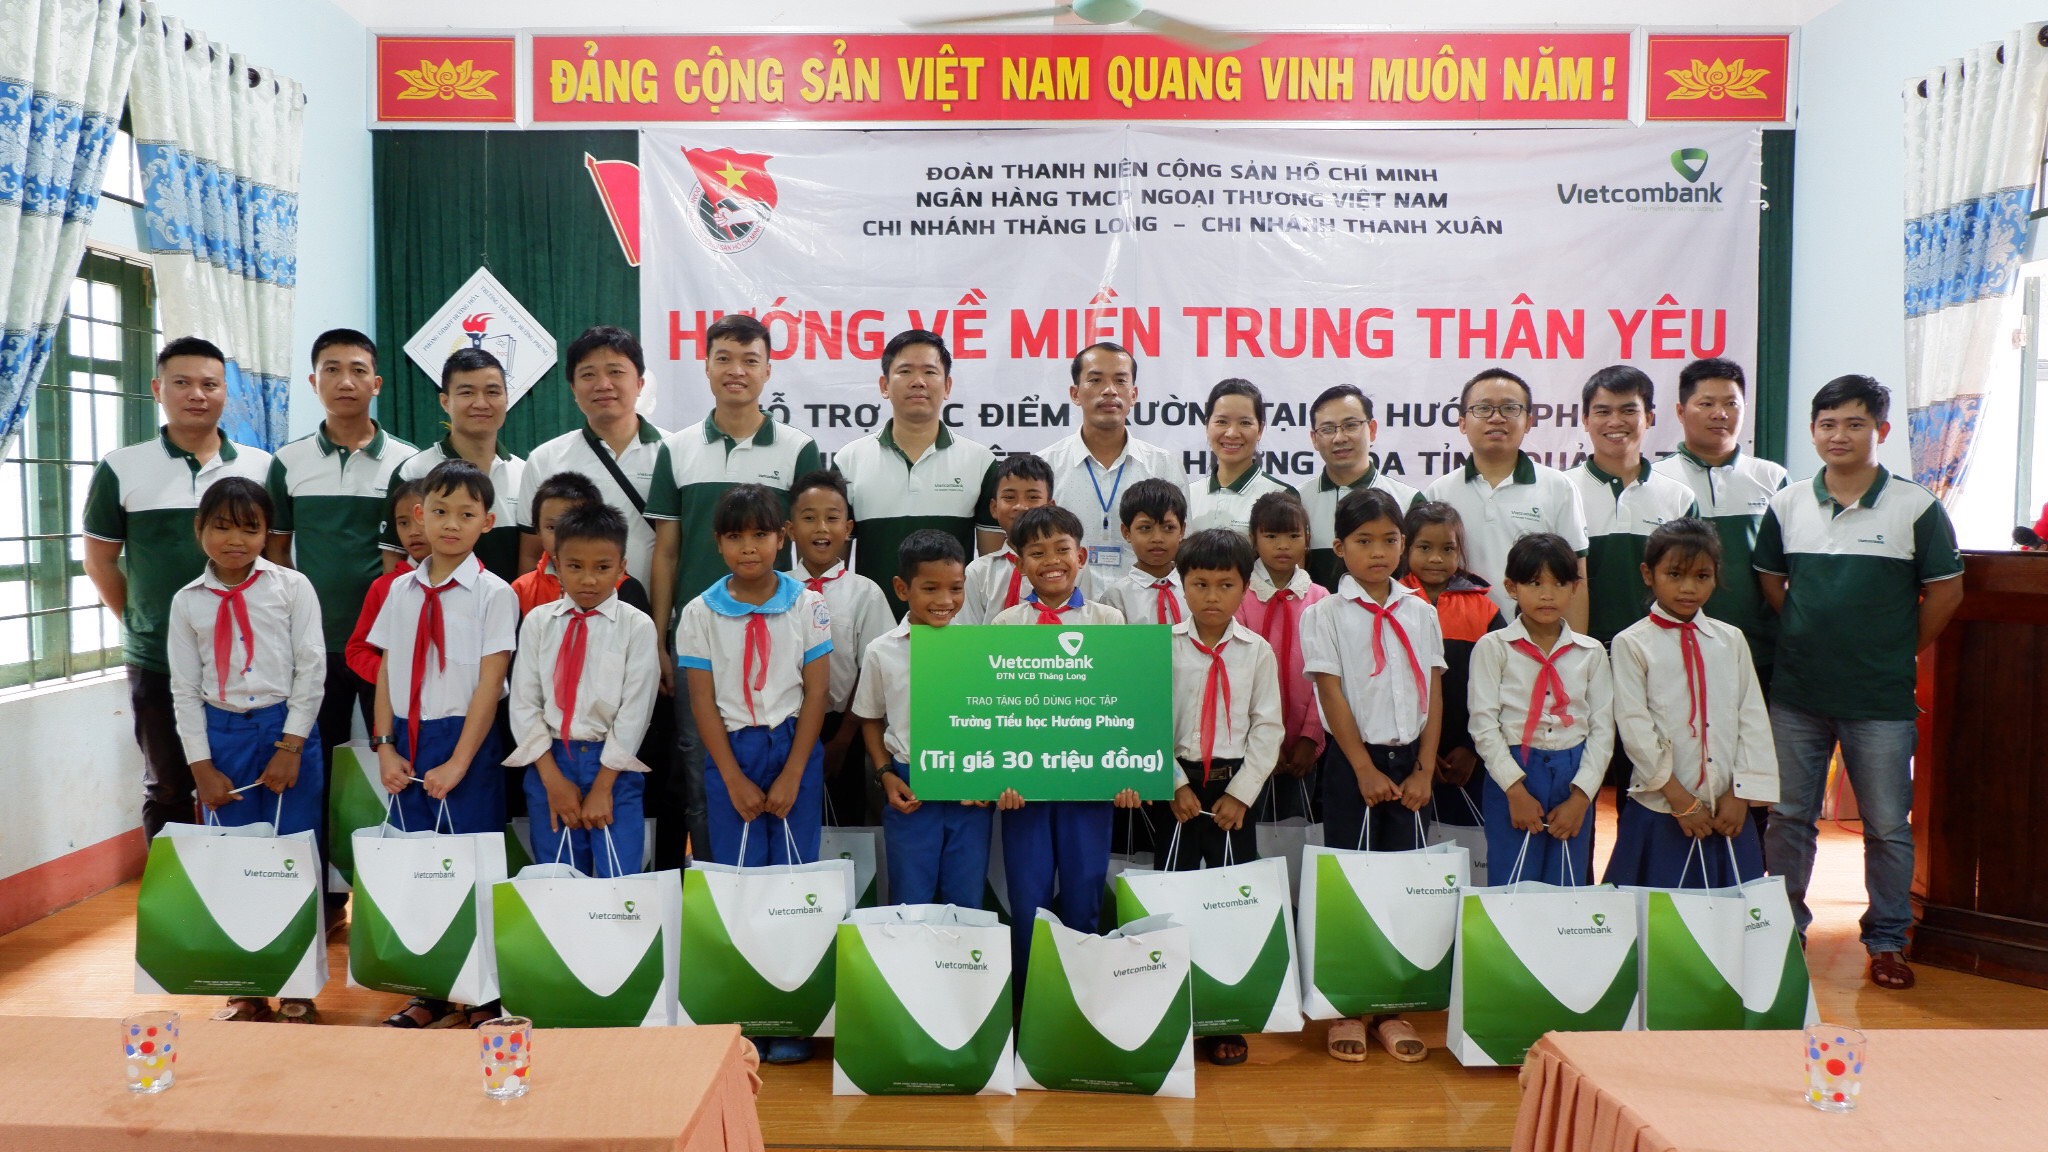 Đoàn thanh niên Vietcombank Thăng Long hướng về miền Trung thân yêu